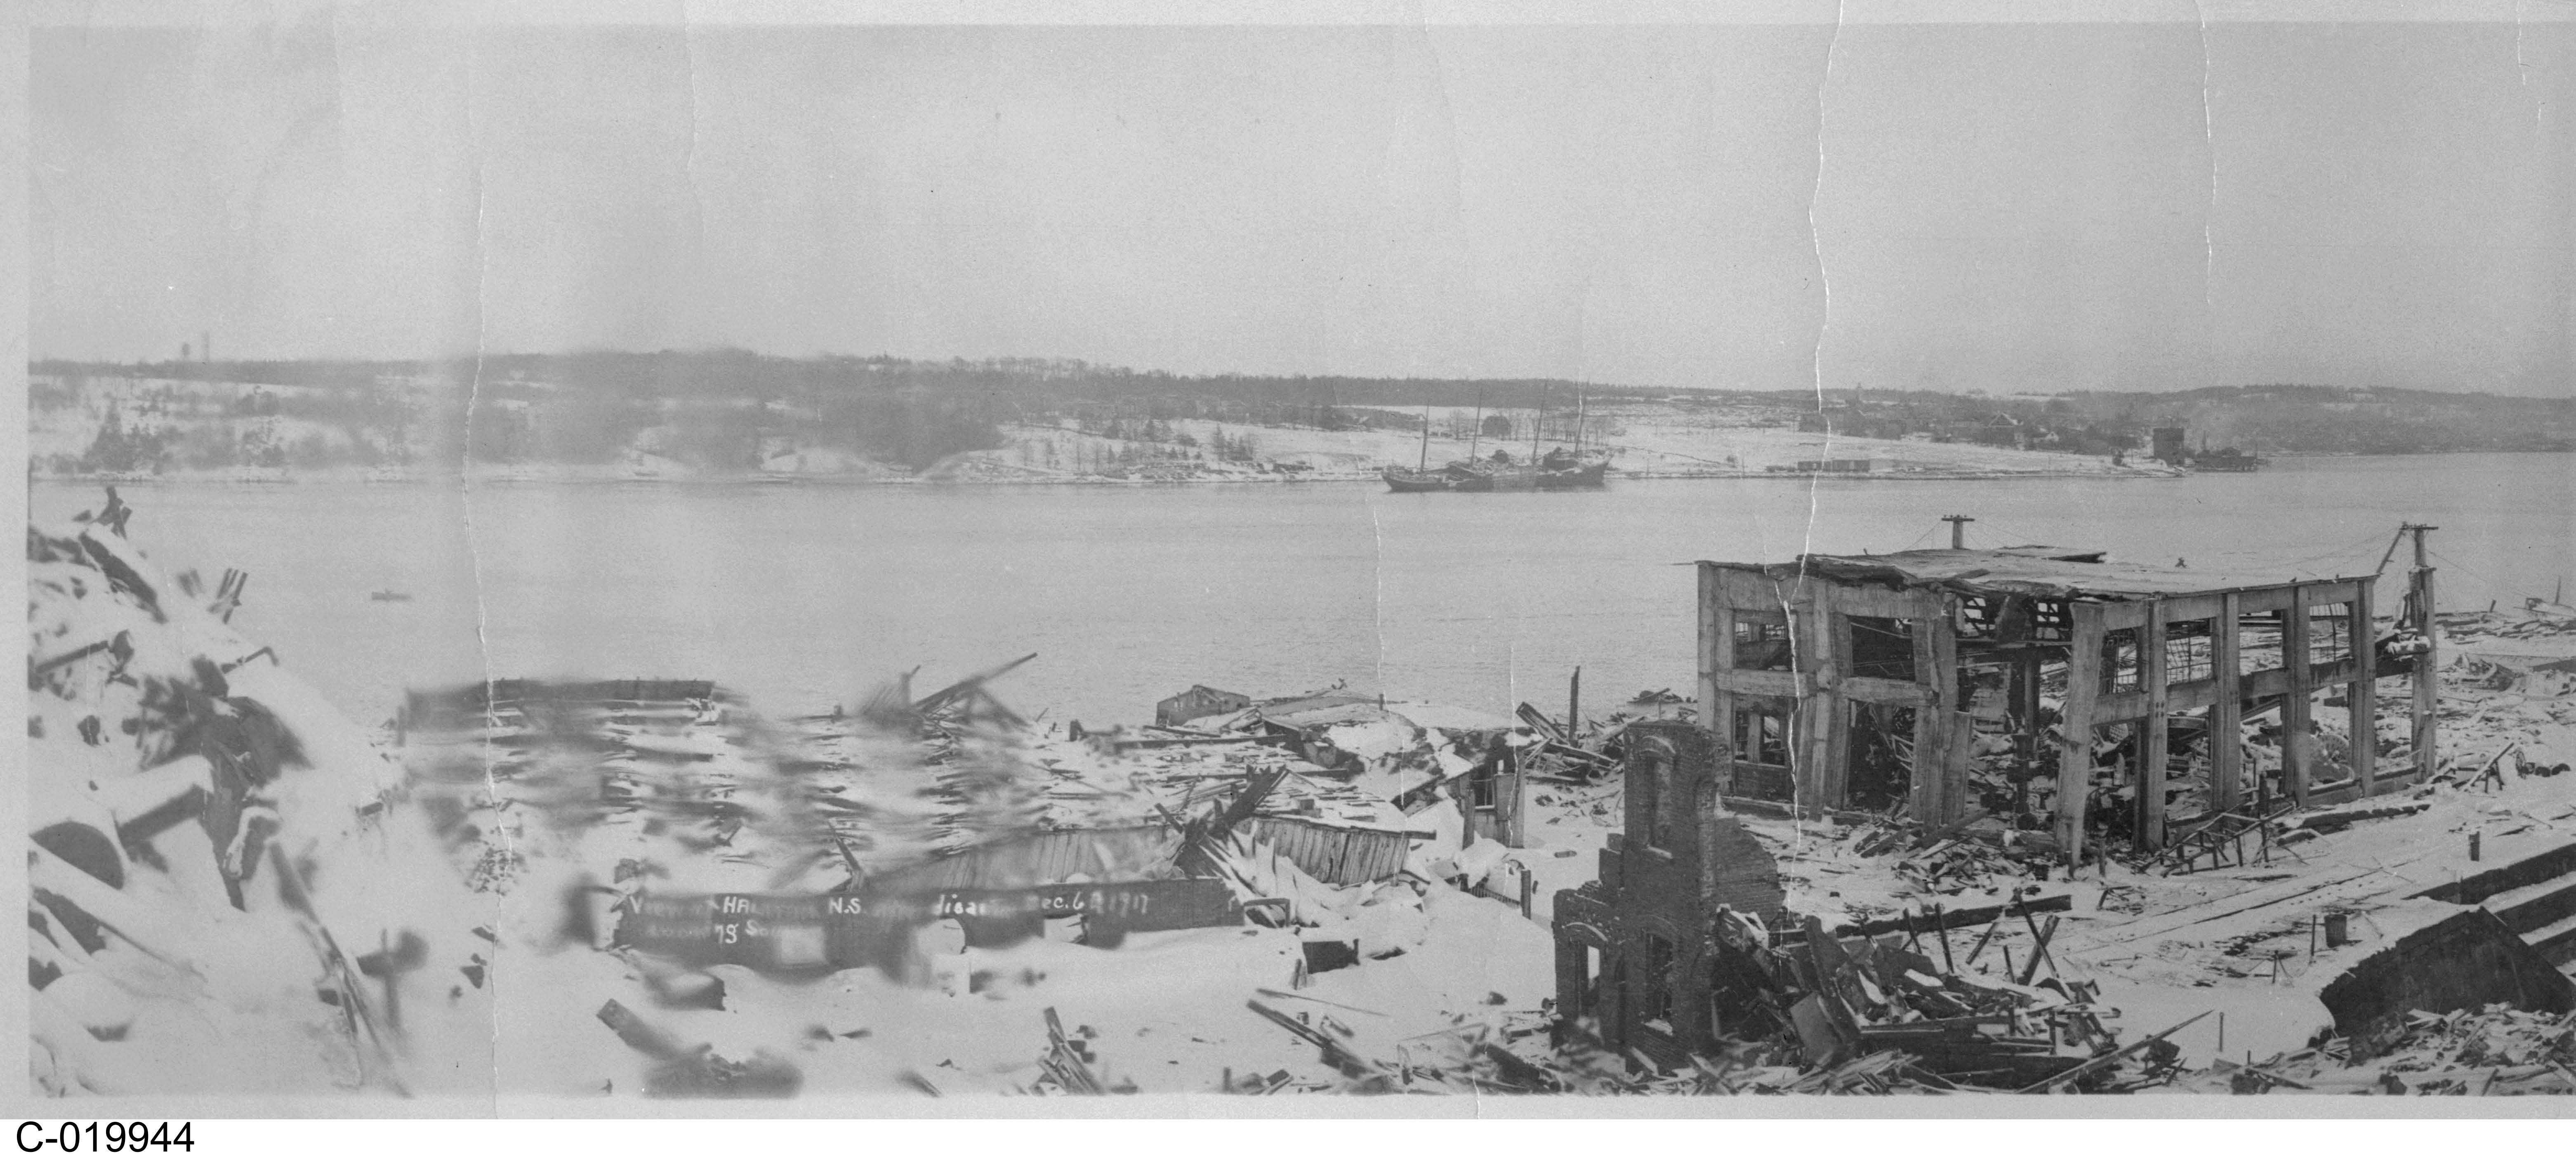 Photographie en noir et blanc – – Divers bâtiments sont montrés en ruines. Des usines fonctionnent toujours au loin. Un plan d’eau est visible à gauche sur la photo.